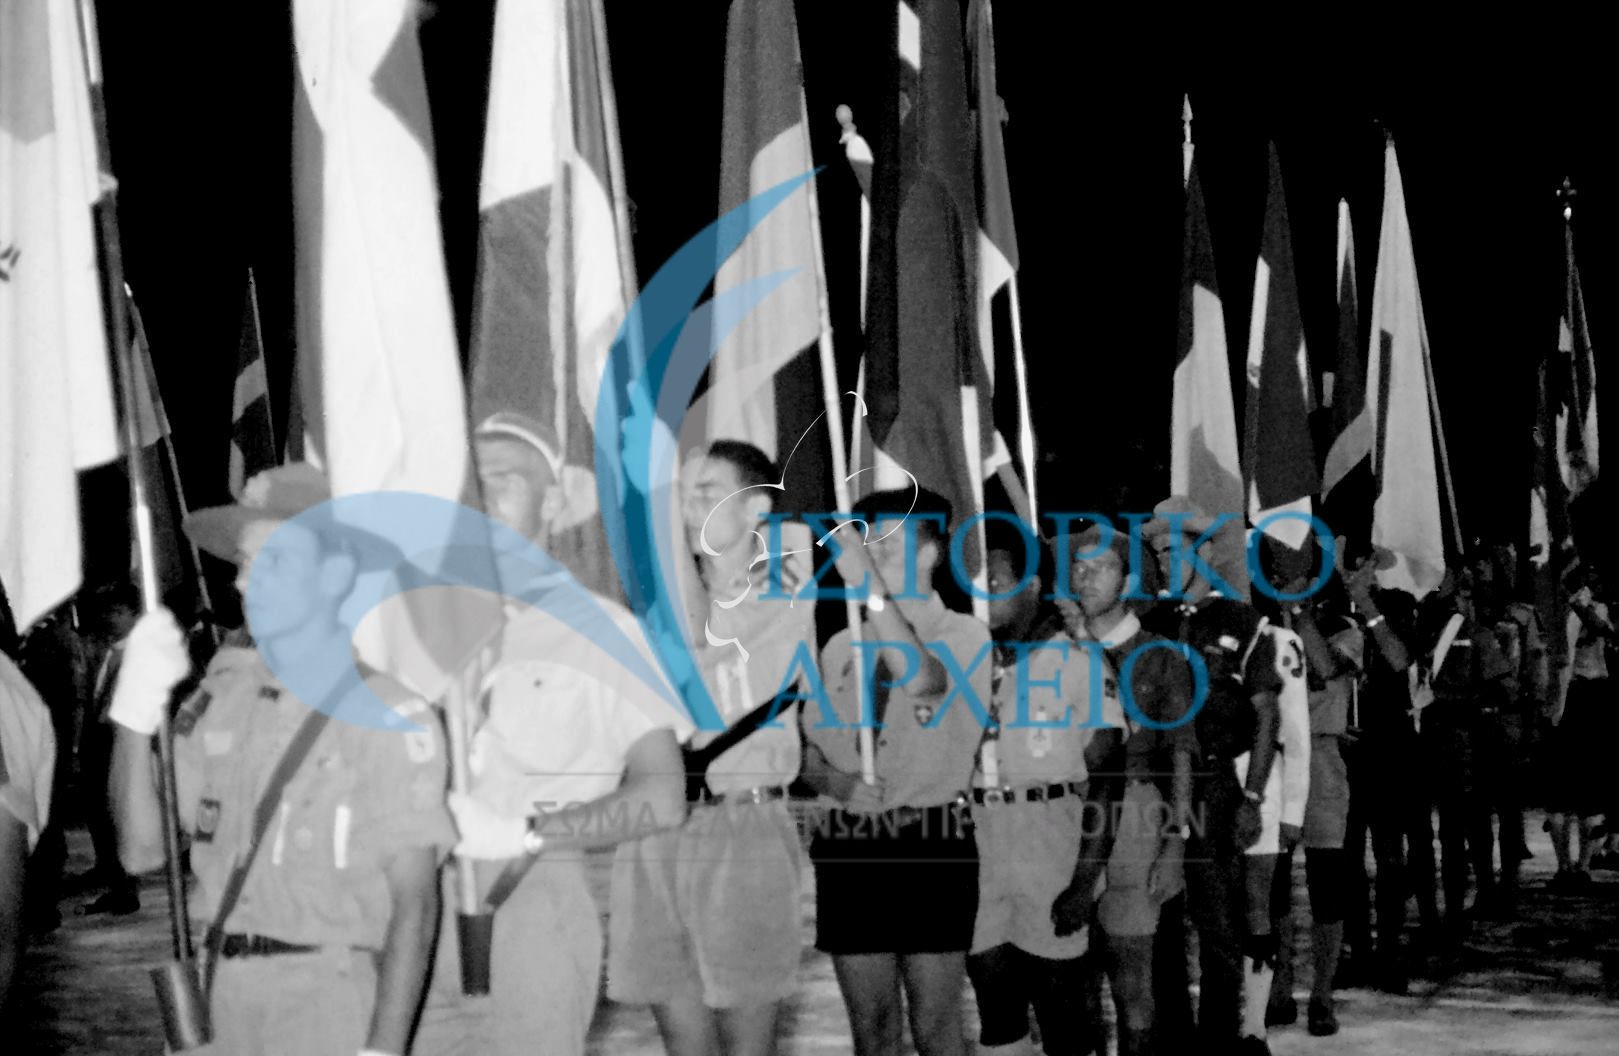 Ξένες αντιπροσωπείες με τις σημαίες τους στο Τζάμπορη του Ιωβηλαίο το 1960.